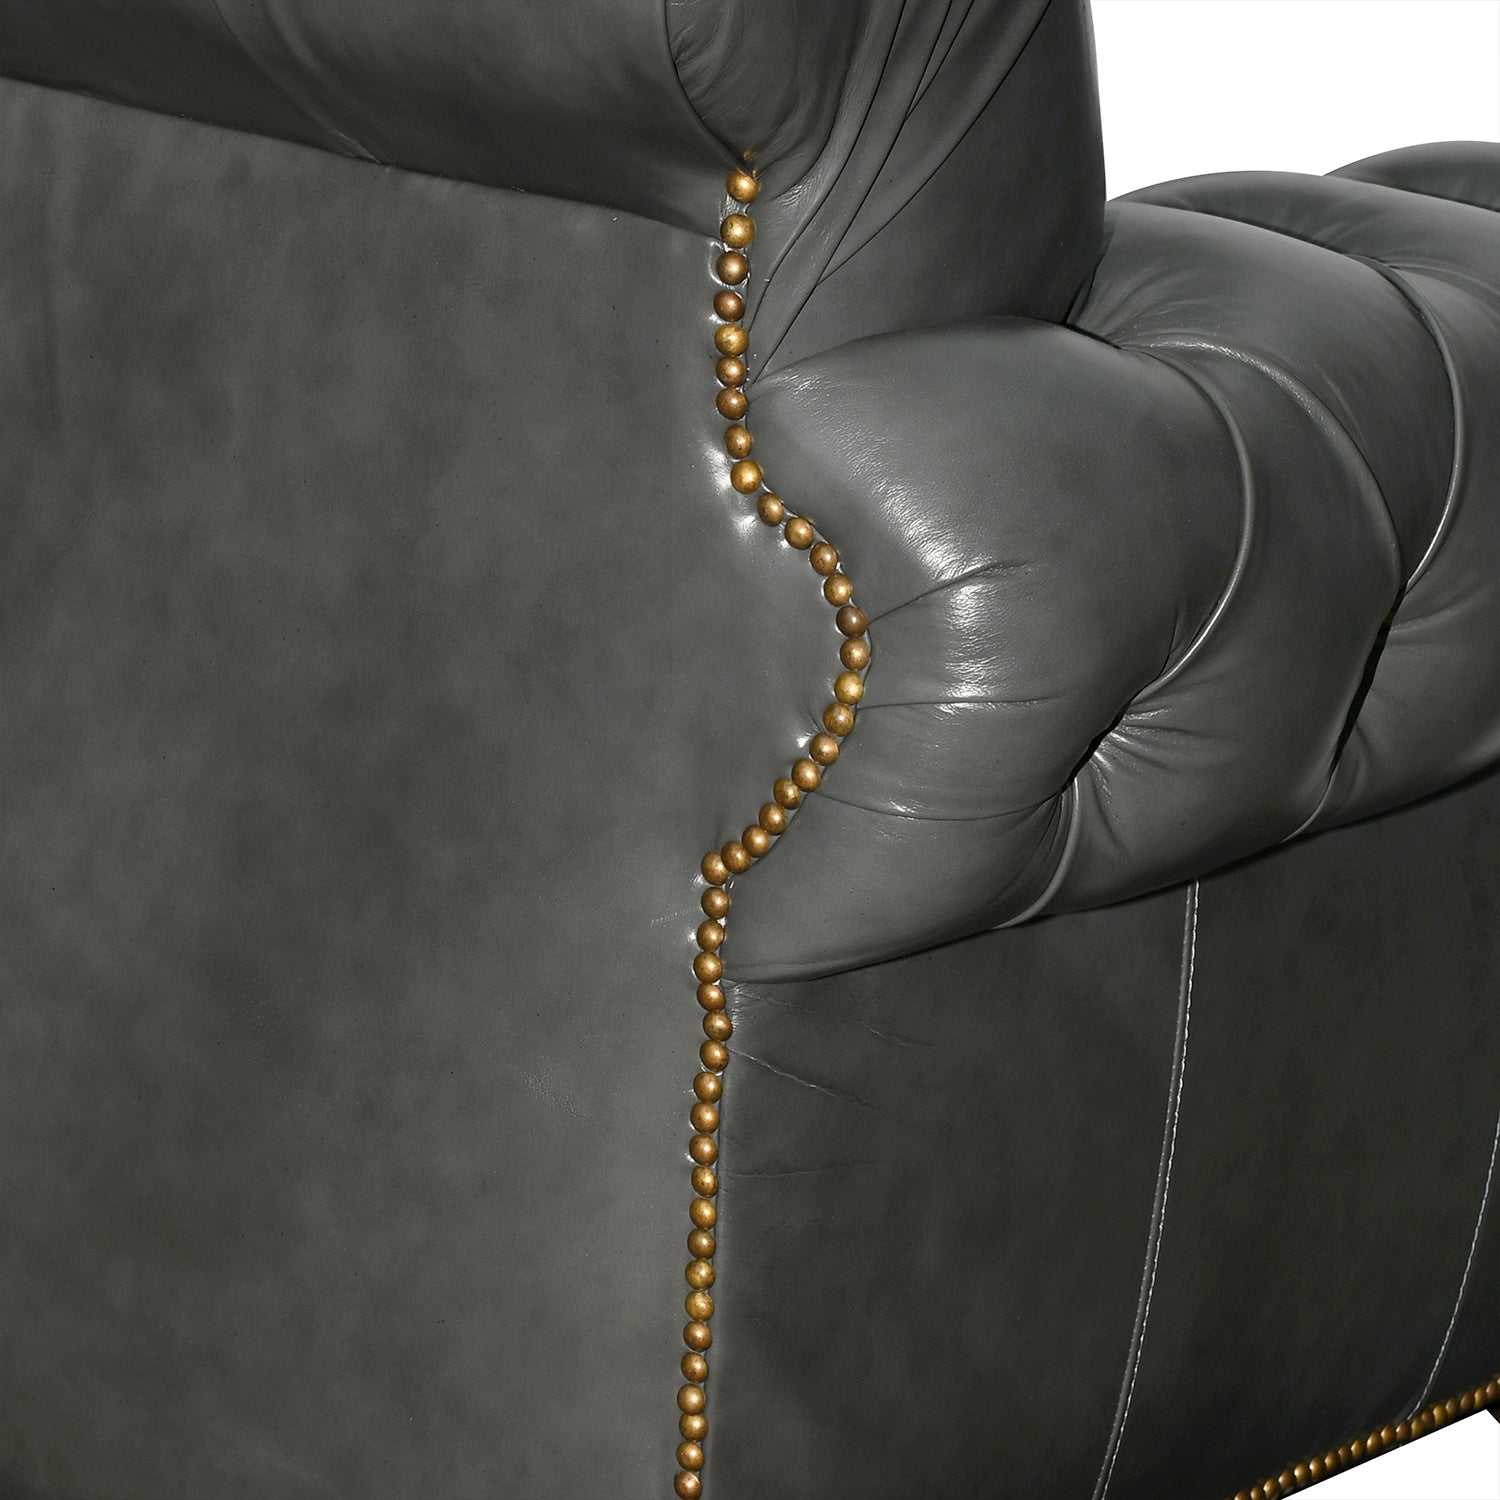 Hudson Ara Leather Sofa Coal Close Up Back